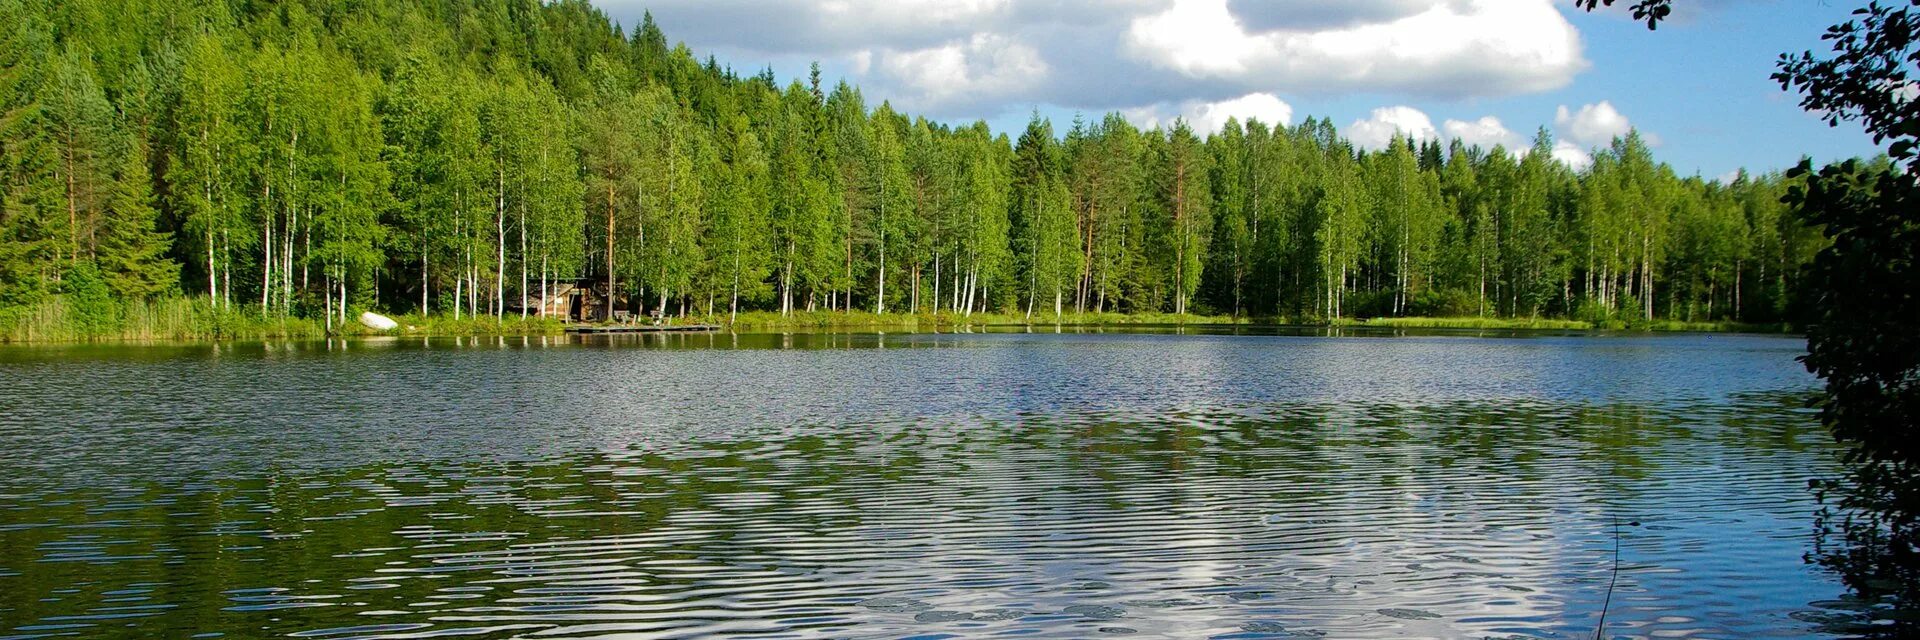 Республика тысячи озер. Финляндия тысяча озер. Финляндия Страна тысячи озер. Карелия 1000 озер. Финляндия Страна 1000 озер.